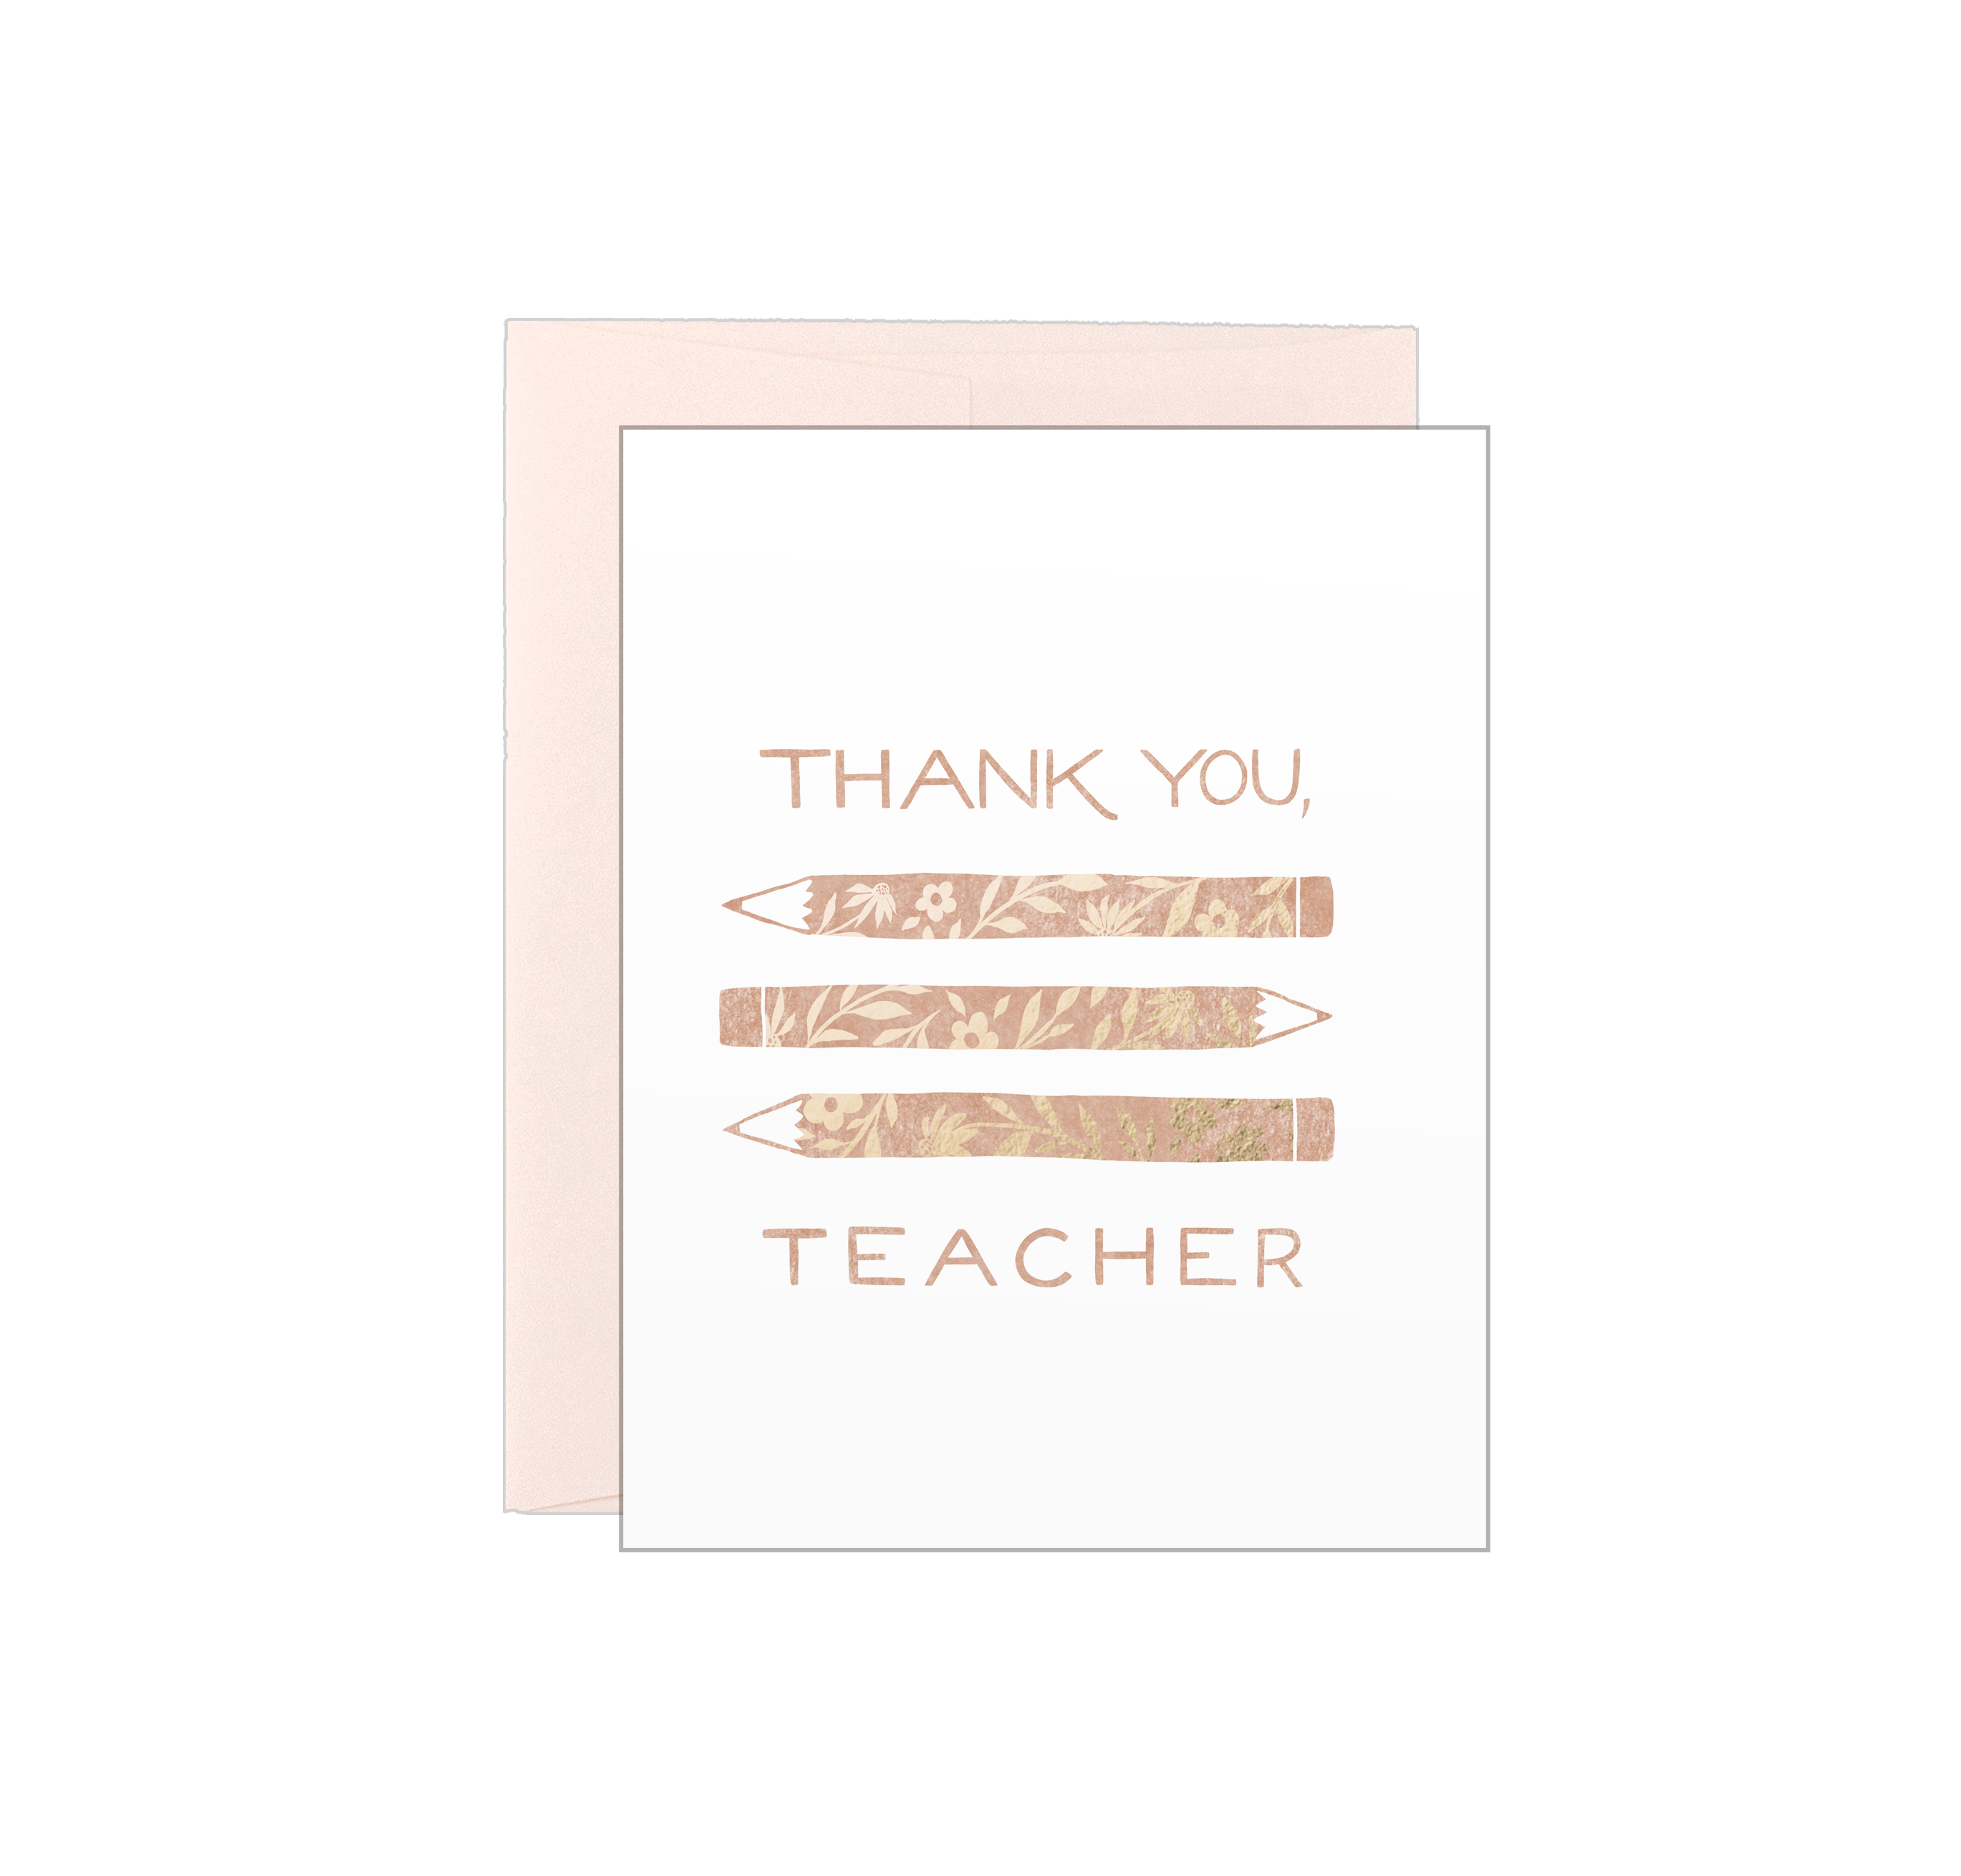 Thank You Teacher - Pencils - Letterpress Card